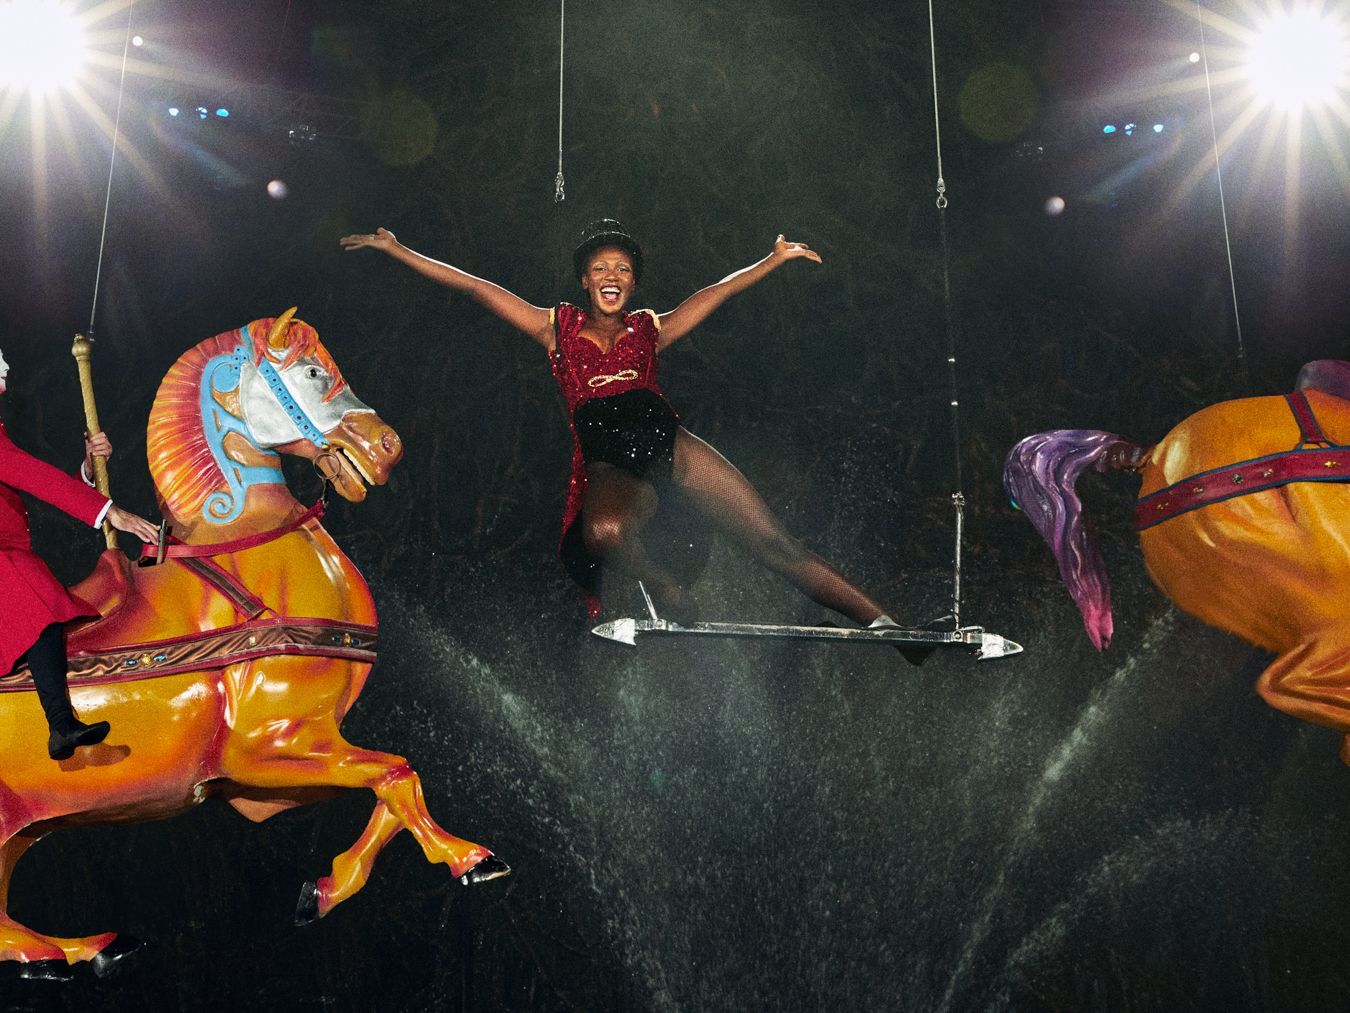 "Ich liebe Action, ich liebe Nervenkitzel. Ich hab richtig Lust darauf." Voller Begeisterung schwingt sich Somajia auf das Trapez und überzeugt Heidi Klum und Starfotograf Max Montgomery am Set. Das ist ihr schönstes Foto des "Cirque du Soleil"-Fotoshootings.